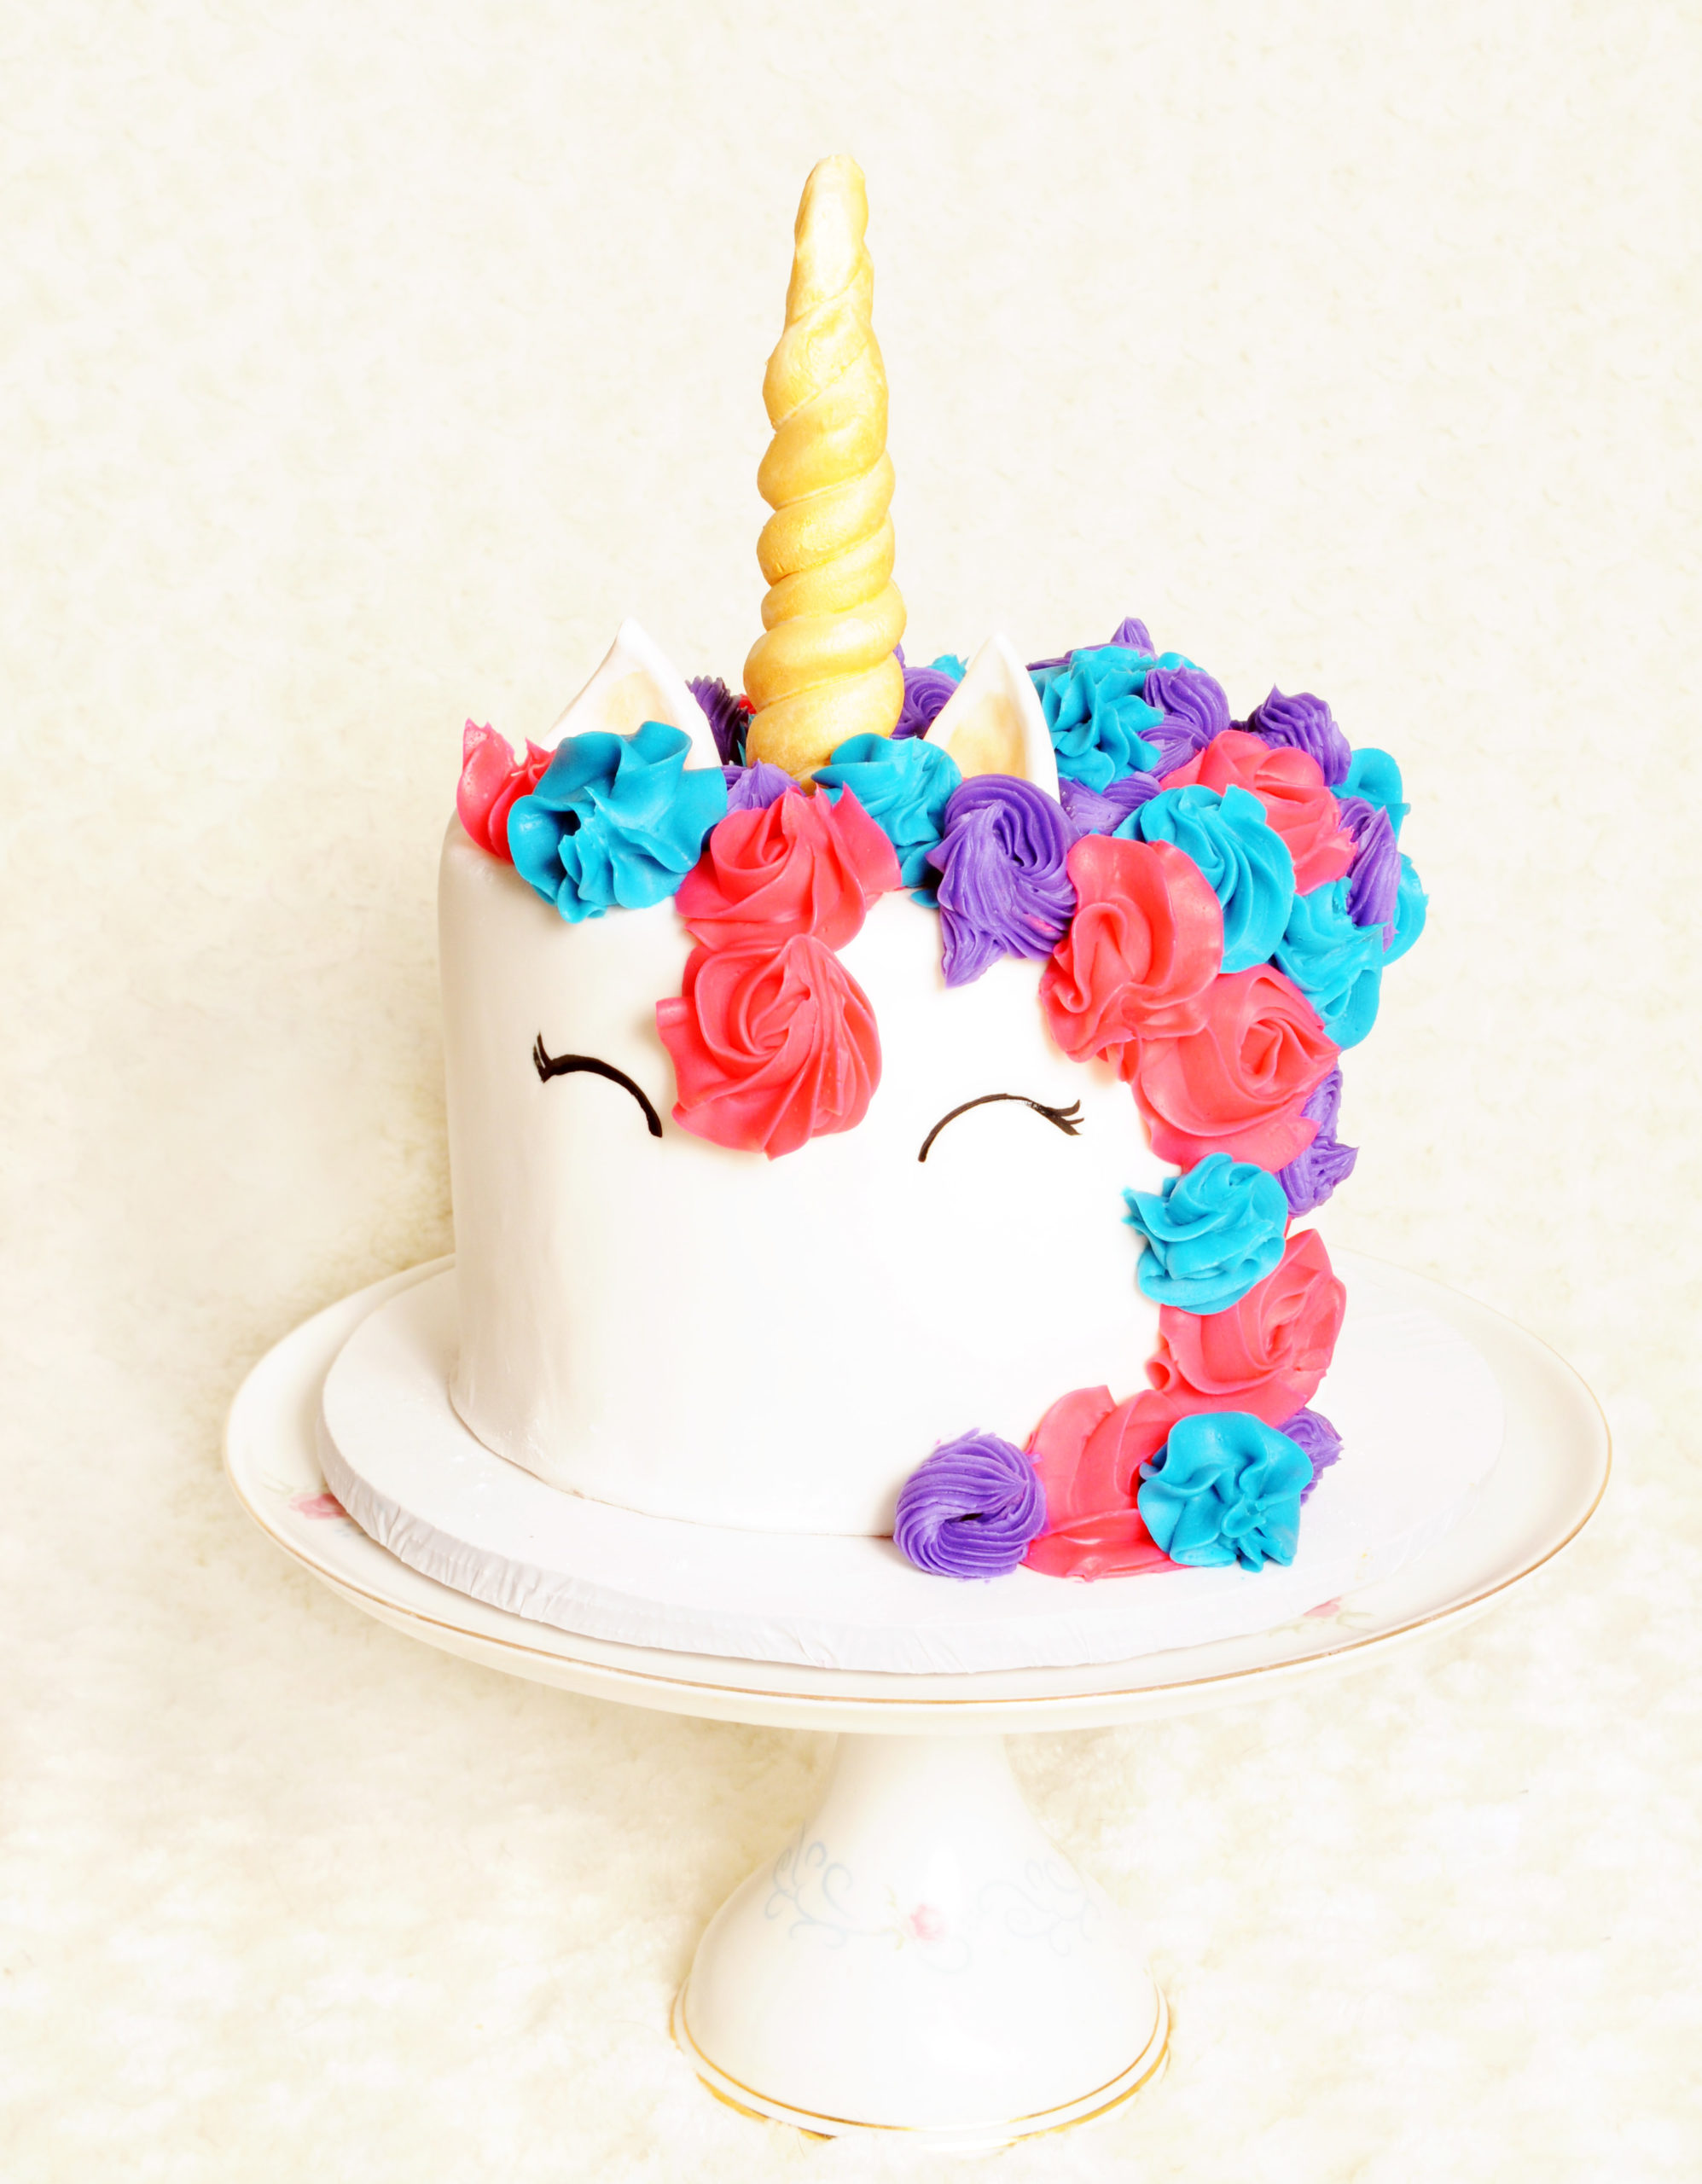 Pinterest Fail: Popular unicorn cake not so easy to make